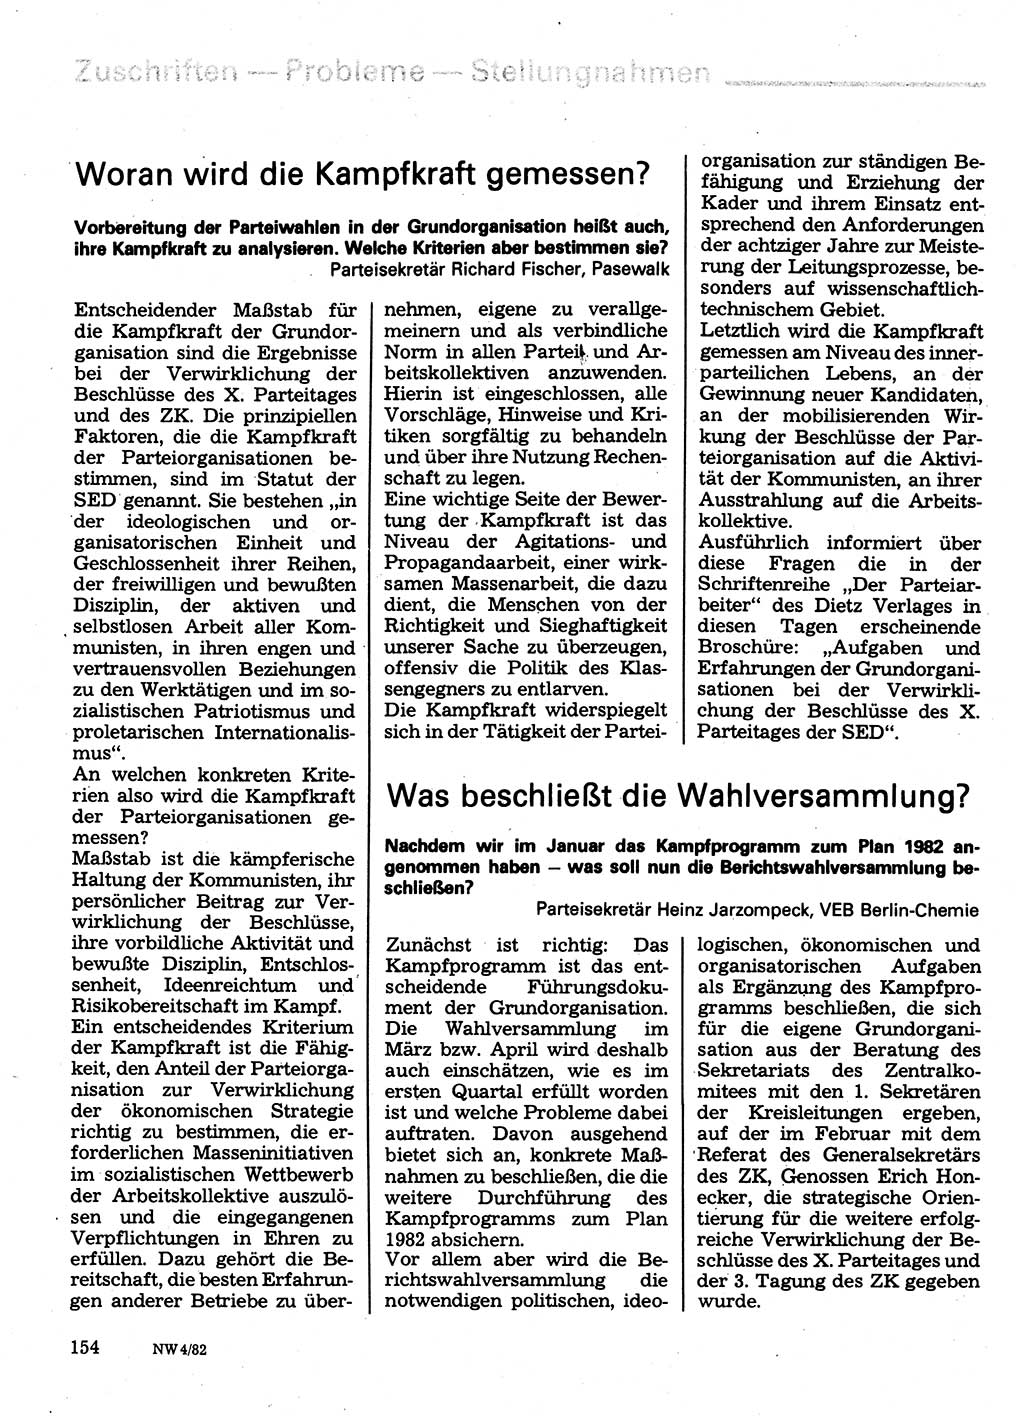 Neuer Weg (NW), Organ des Zentralkomitees (ZK) der SED (Sozialistische Einheitspartei Deutschlands) fÃ¼r Fragen des Parteilebens, 37. Jahrgang [Deutsche Demokratische Republik (DDR)] 1982, Seite 154 (NW ZK SED DDR 1982, S. 154)